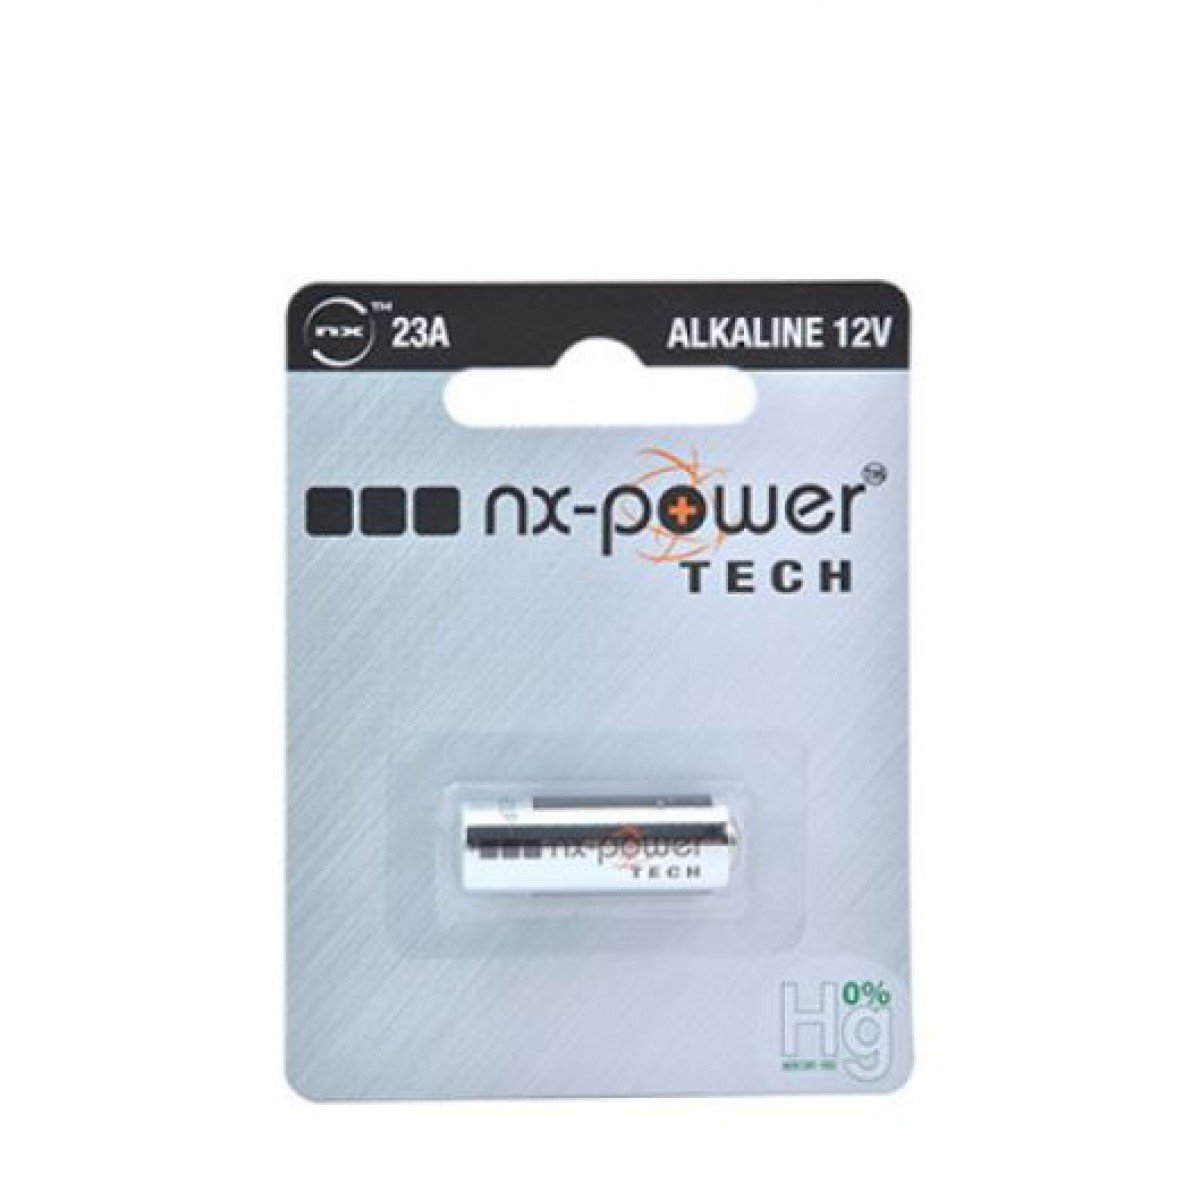 Alkaline battery (blister) x1 Nx-Power Tech 23A 12V 55mAh